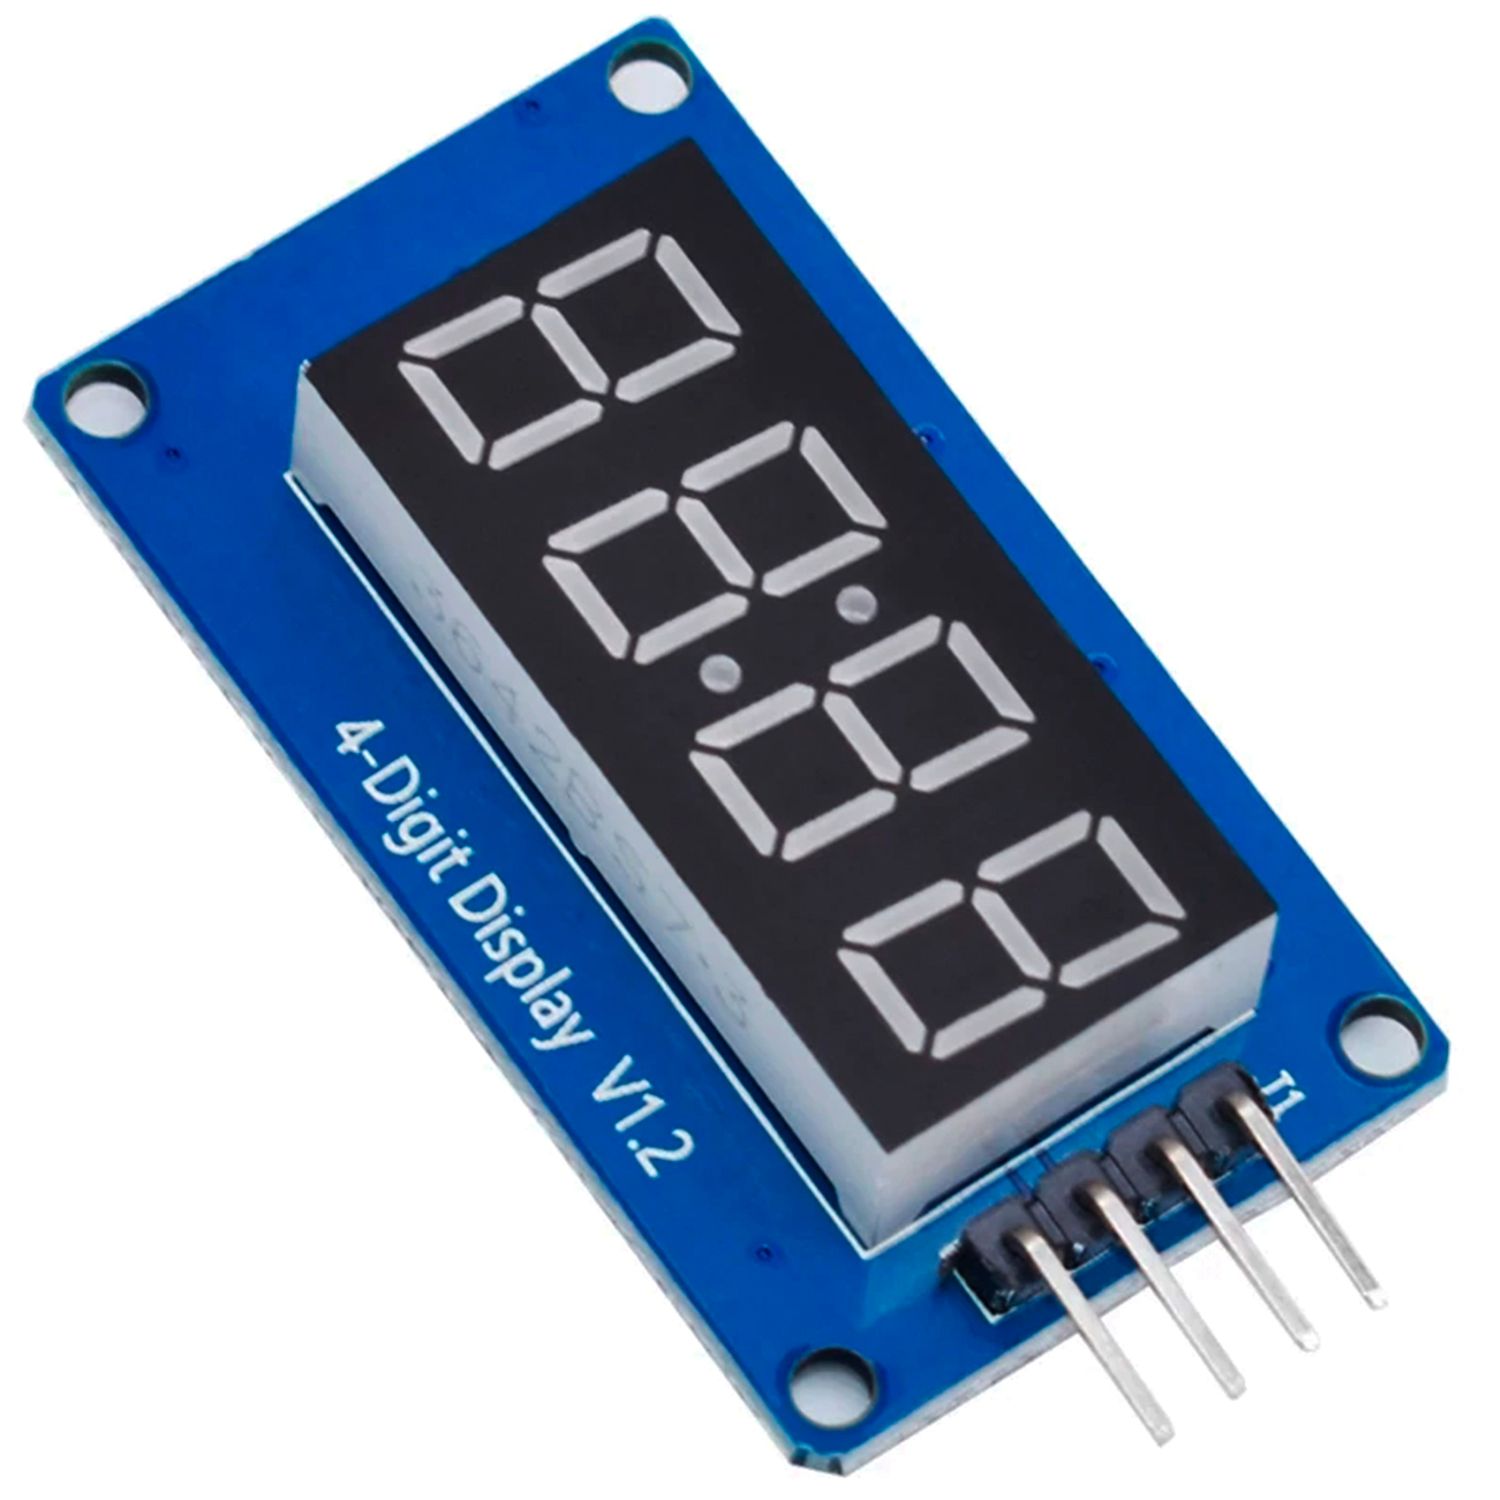 LED-індикатор семисегментний 4-розрядний з I2C драйвером TM1637